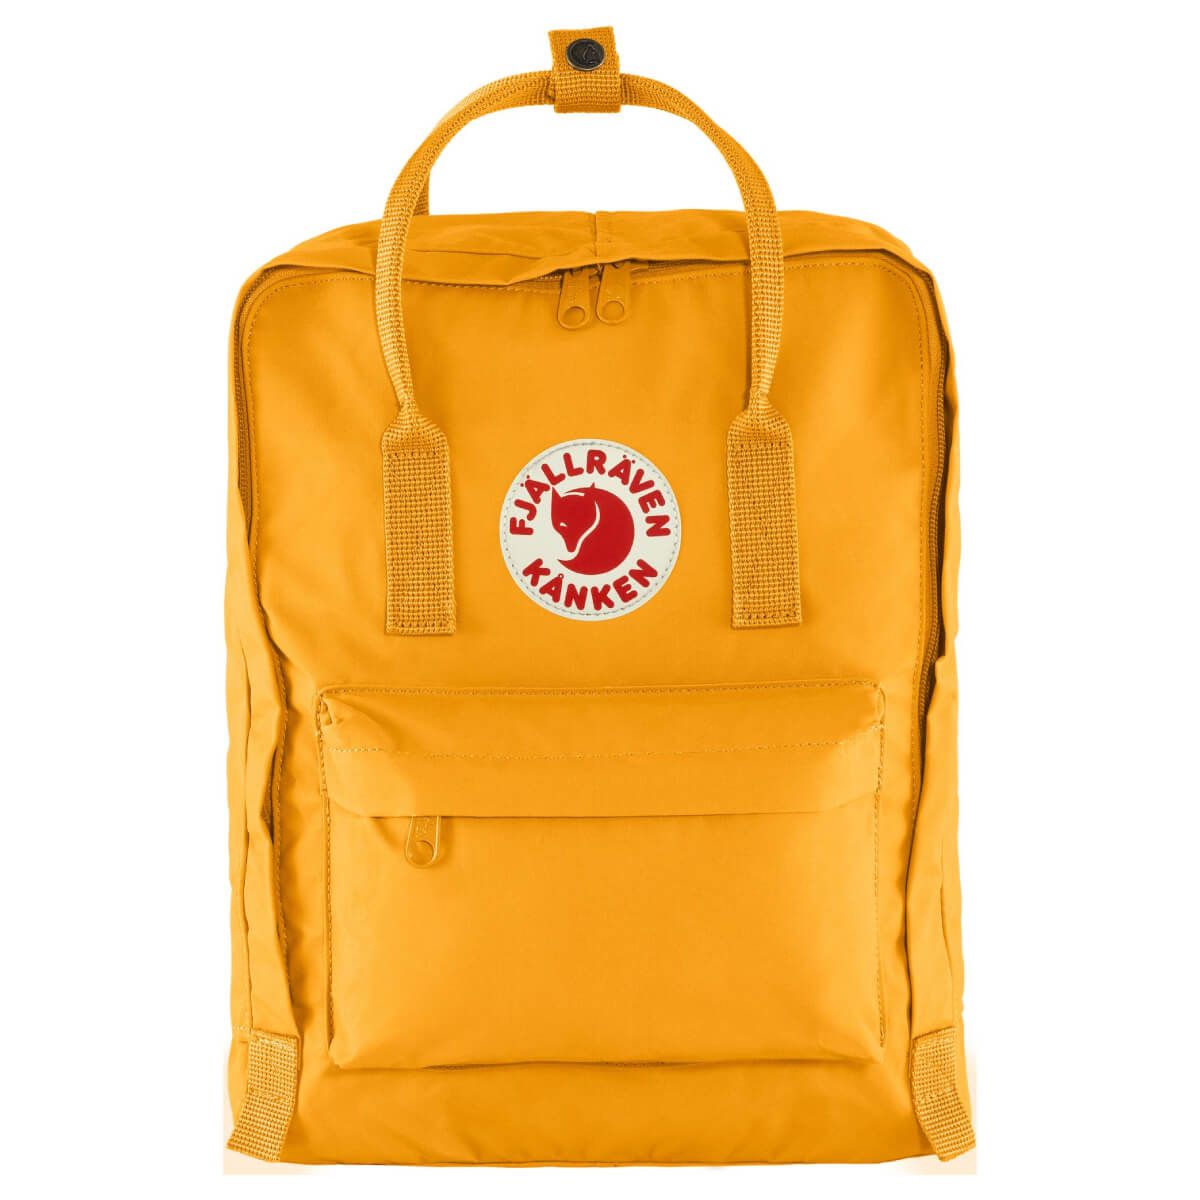 Городской рюкзак Fjallraven Kanken Warm Yellow 16 л 23510.141